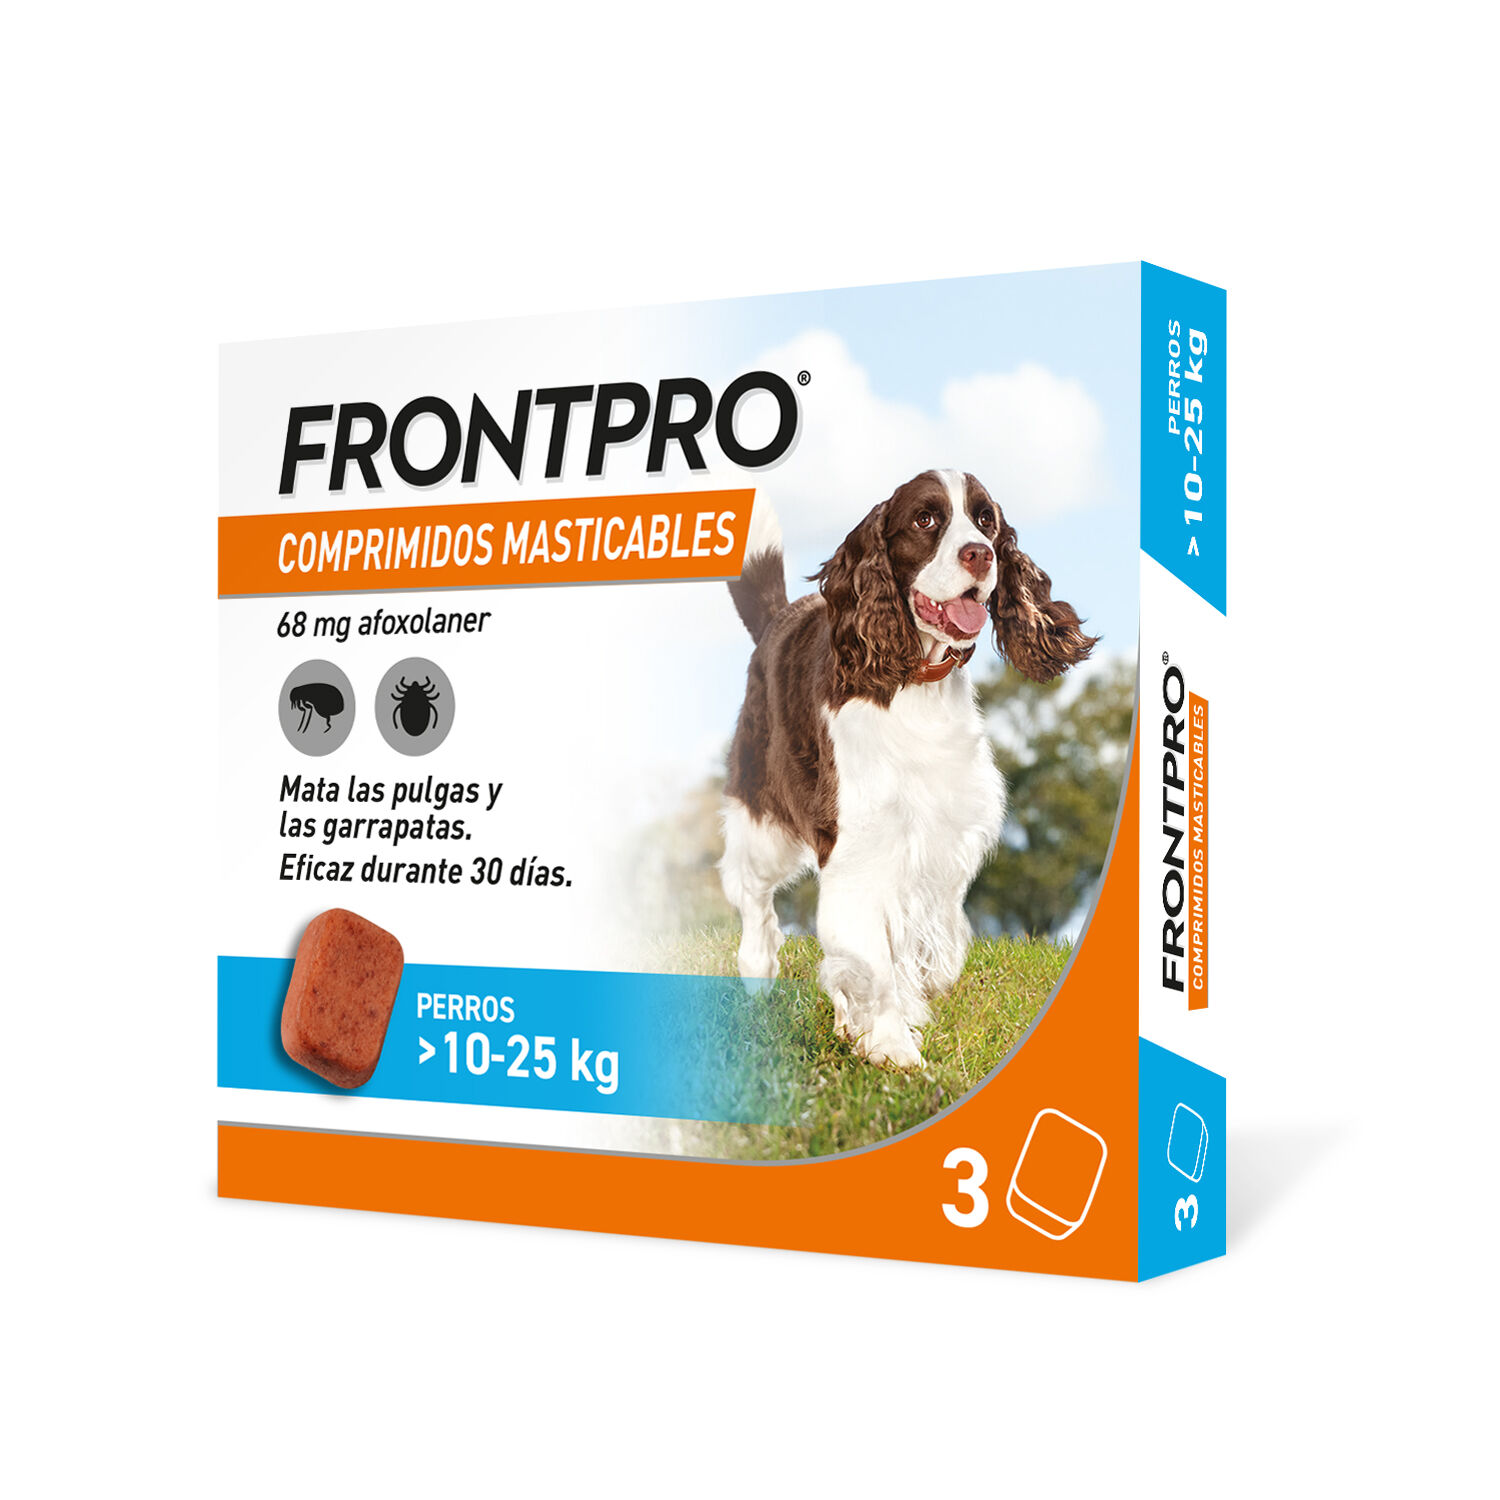 Frontpro 2x3uds  antiparasitario para perros de 10-25kg